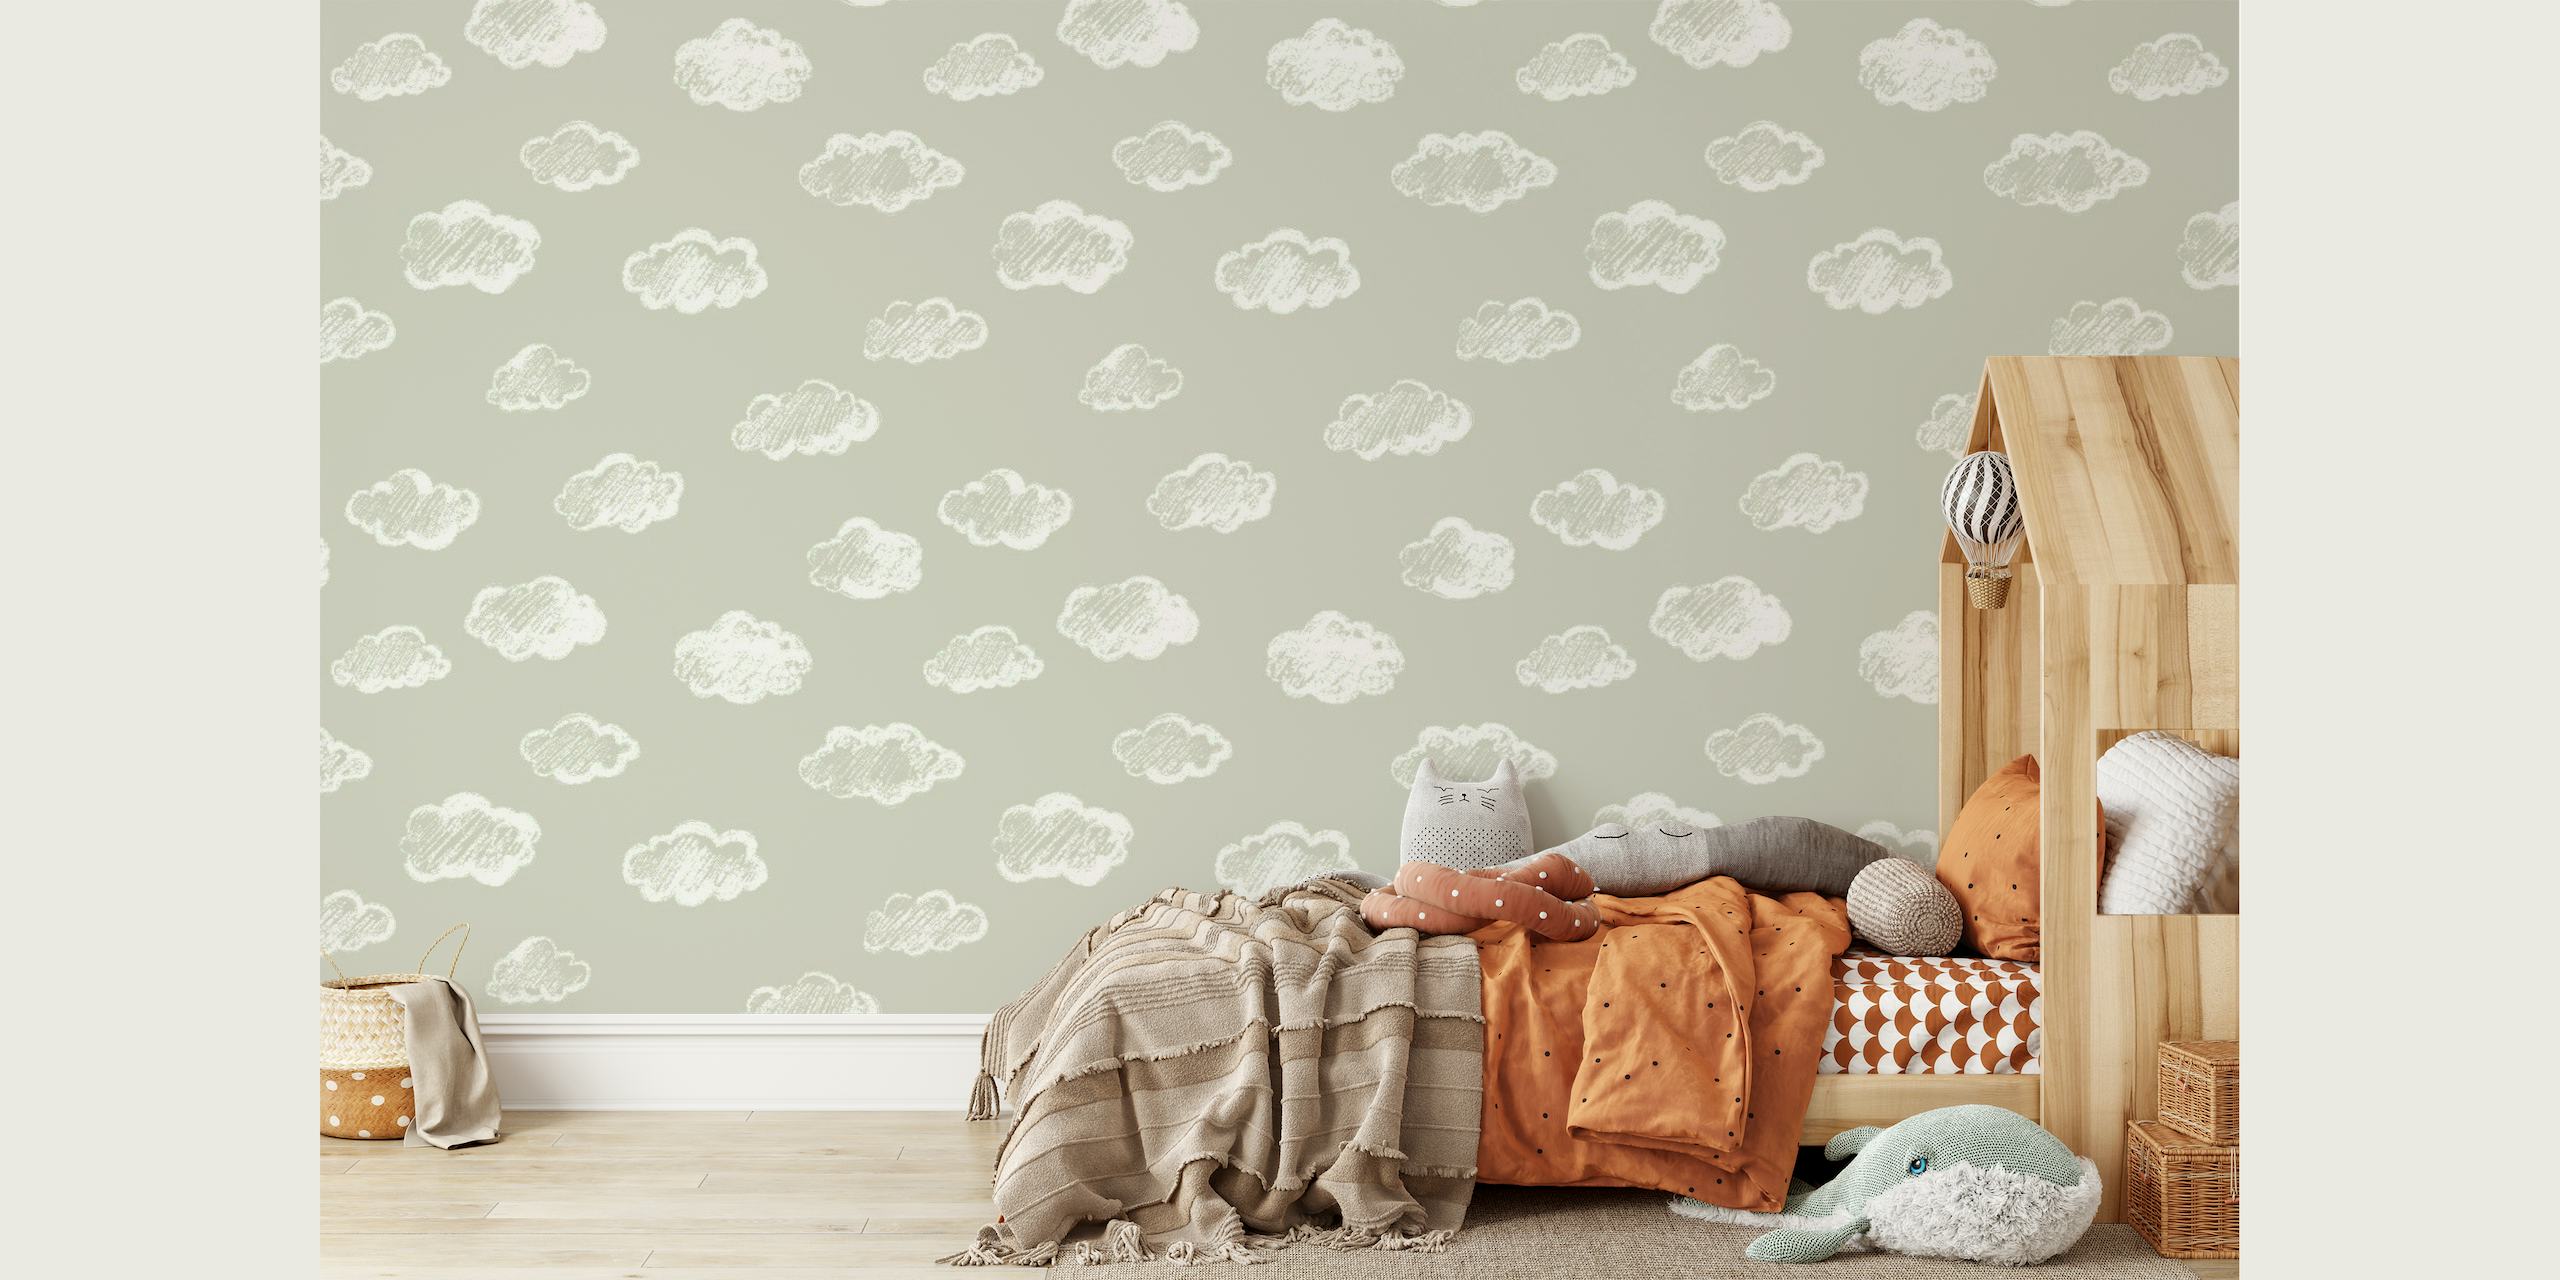 Formas de nuvem branca calcária em um fotomural vinílico de parede com fundo cinza pomba